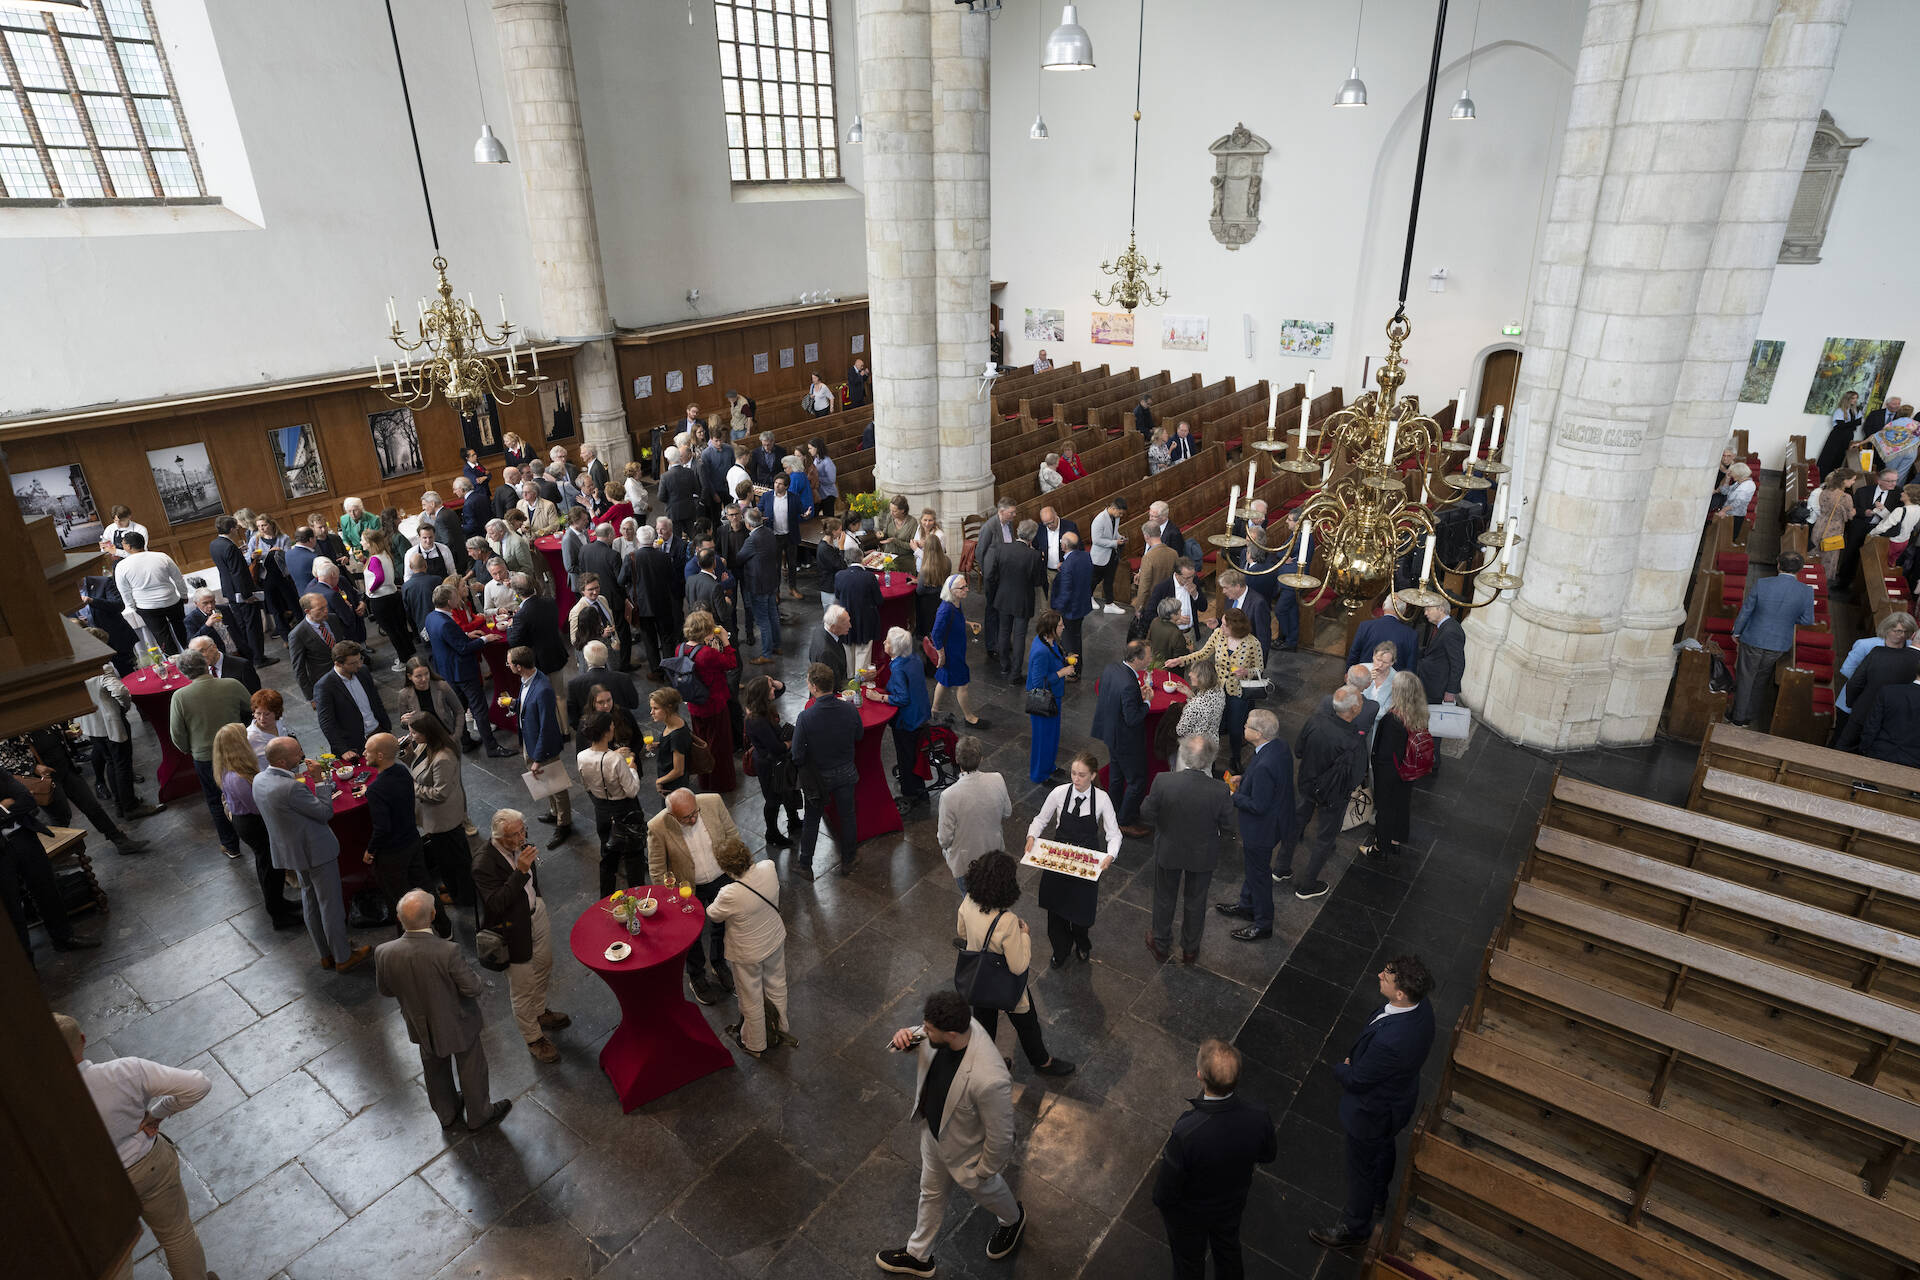 Symposium had plaats in een goedgevulde Kloosterkerk in Den Haag